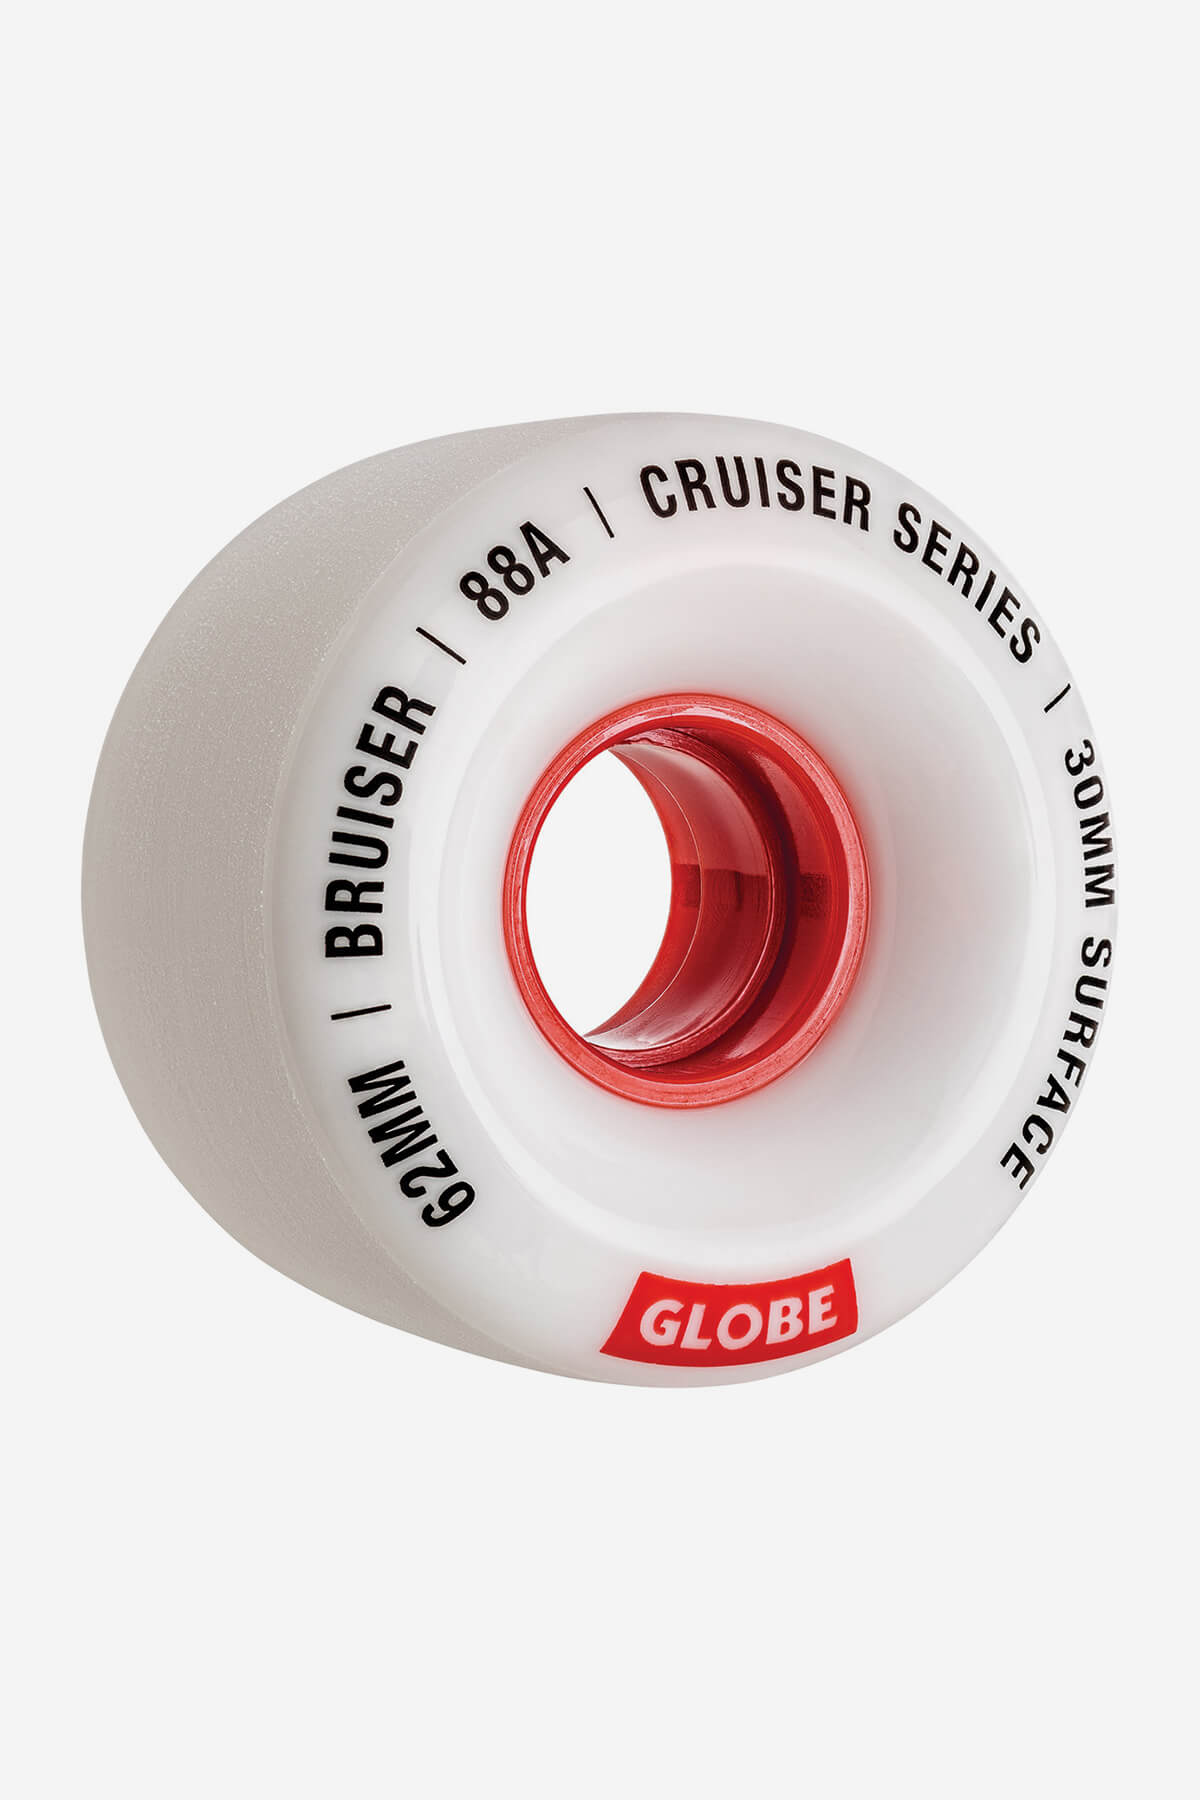 bruiser cruiser skateboard wheel 62mm